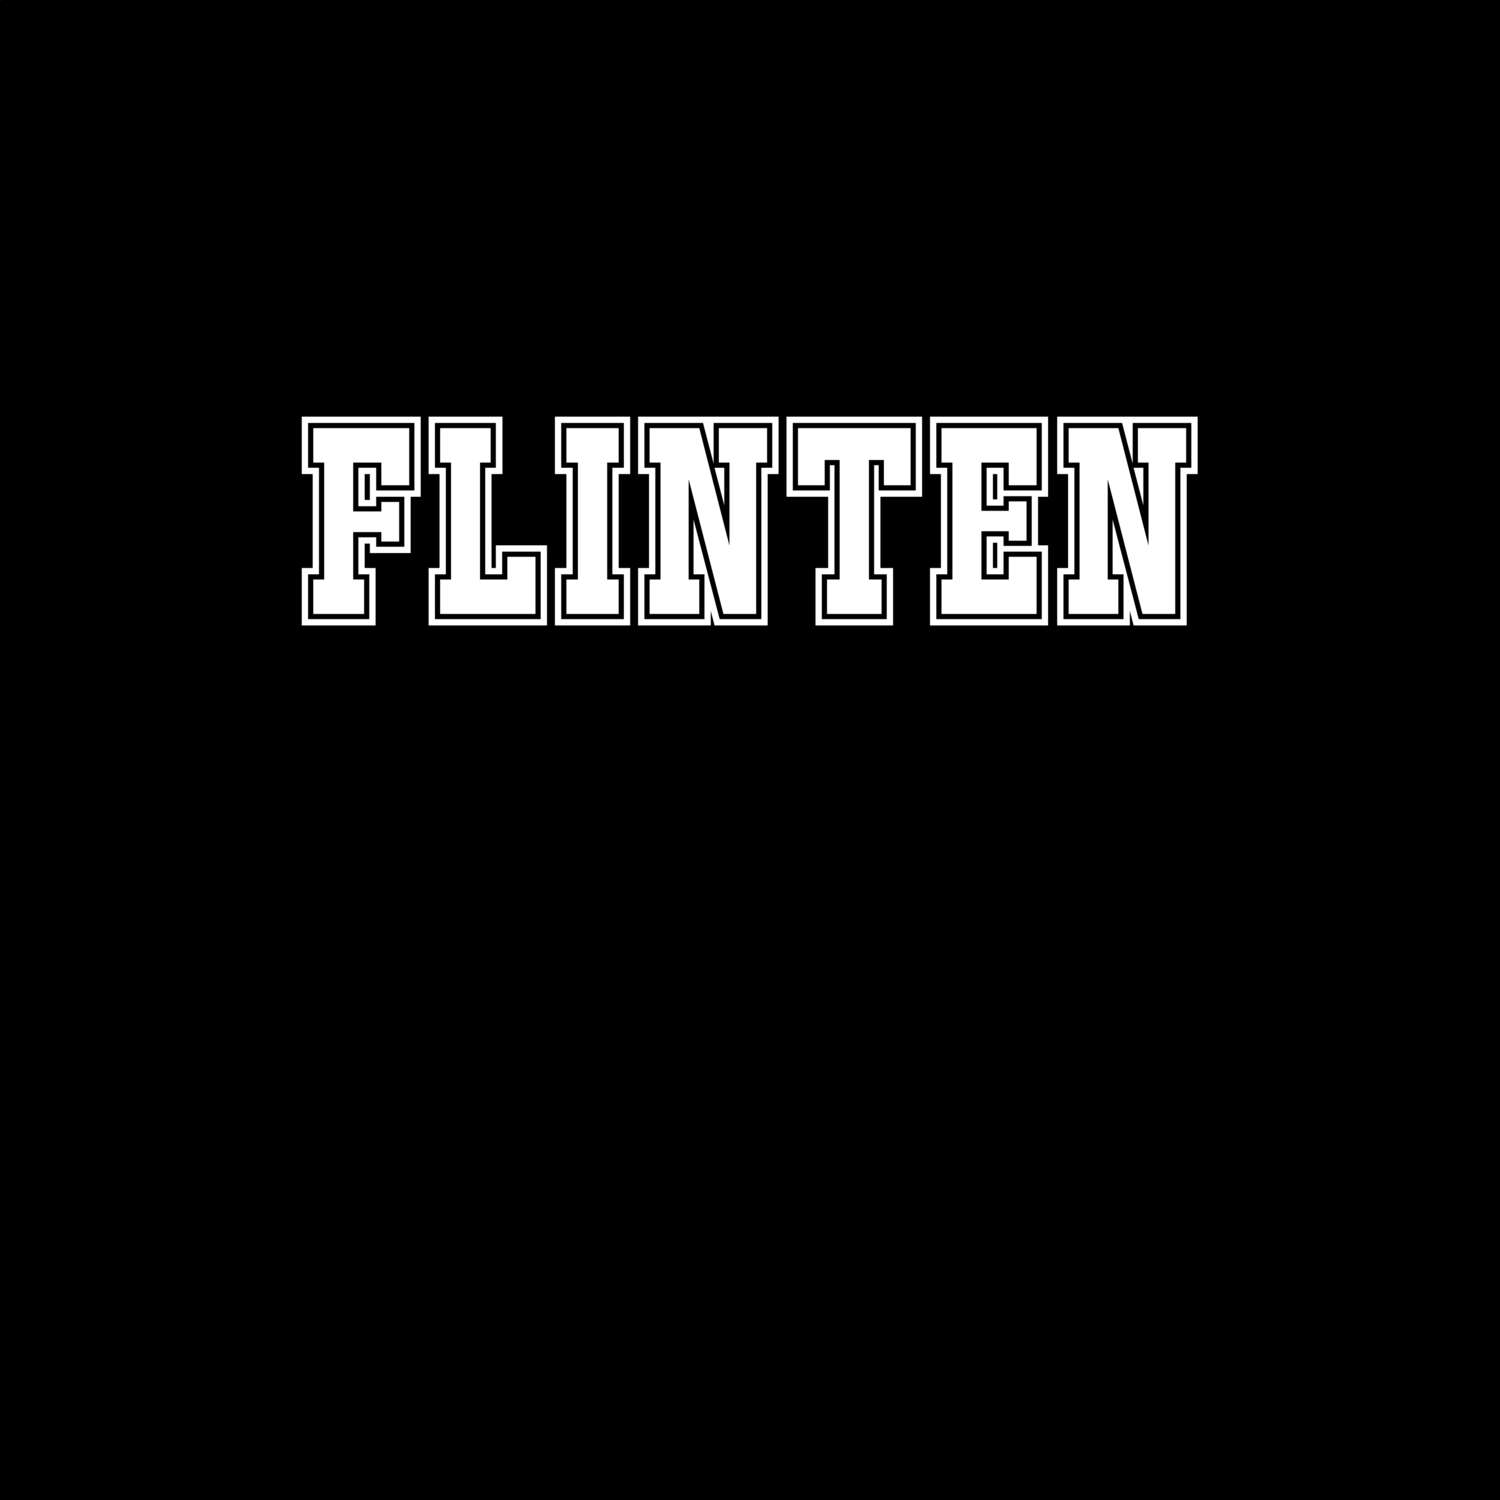 Flinten T-Shirt »Classic«